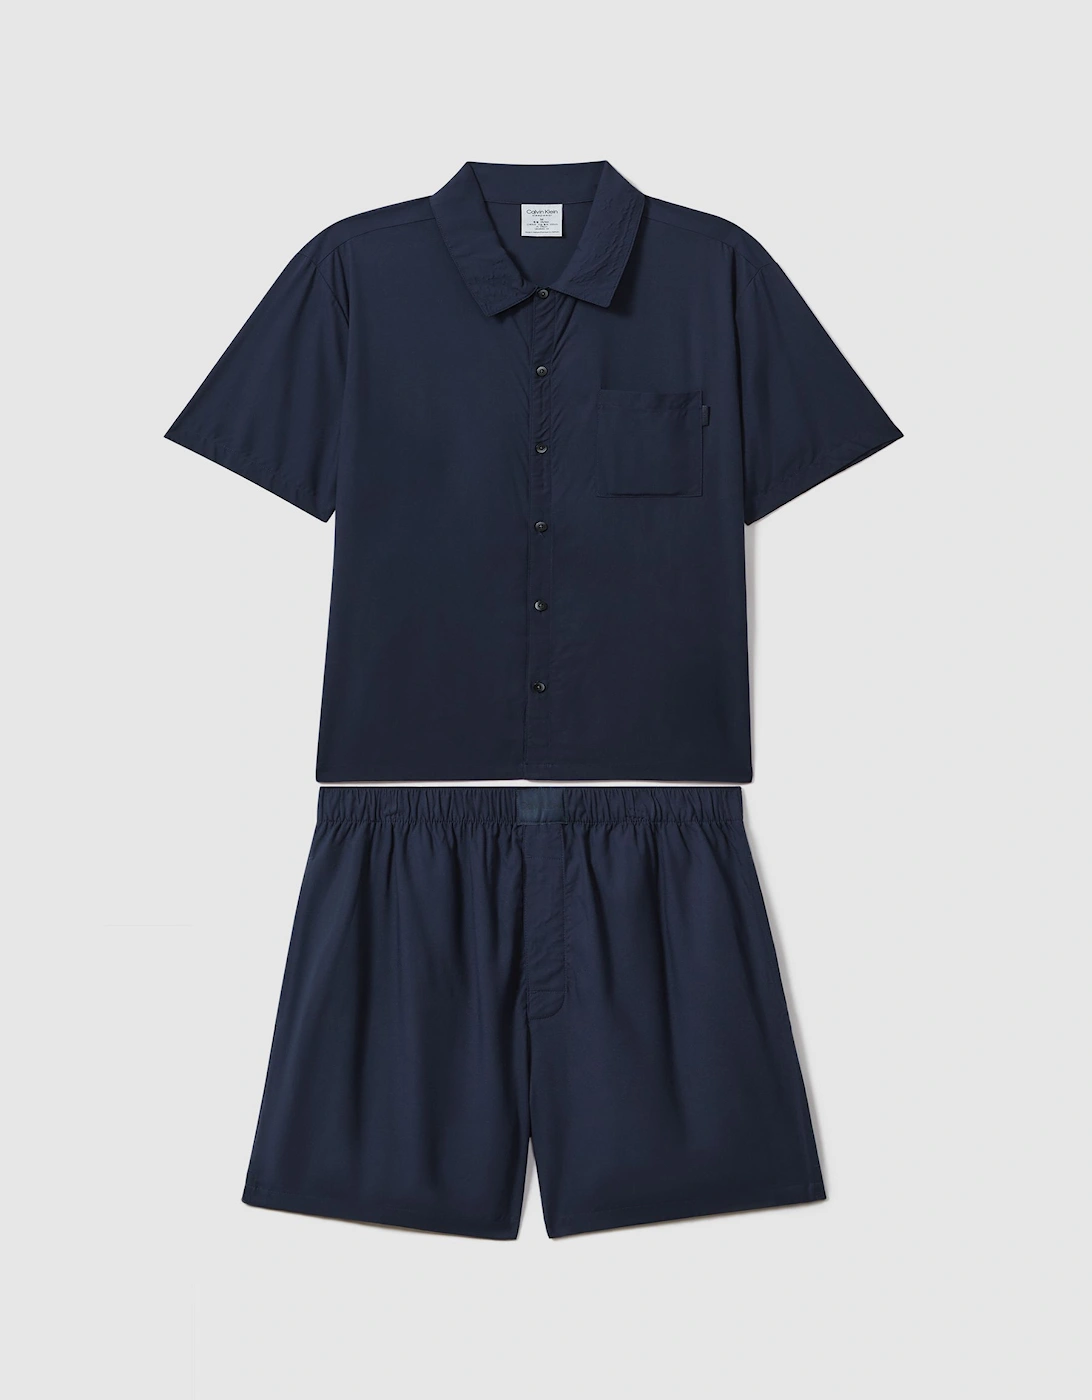 Calvin Klein Underwear Pyjama Shorts and Shirt Set, 2 of 1